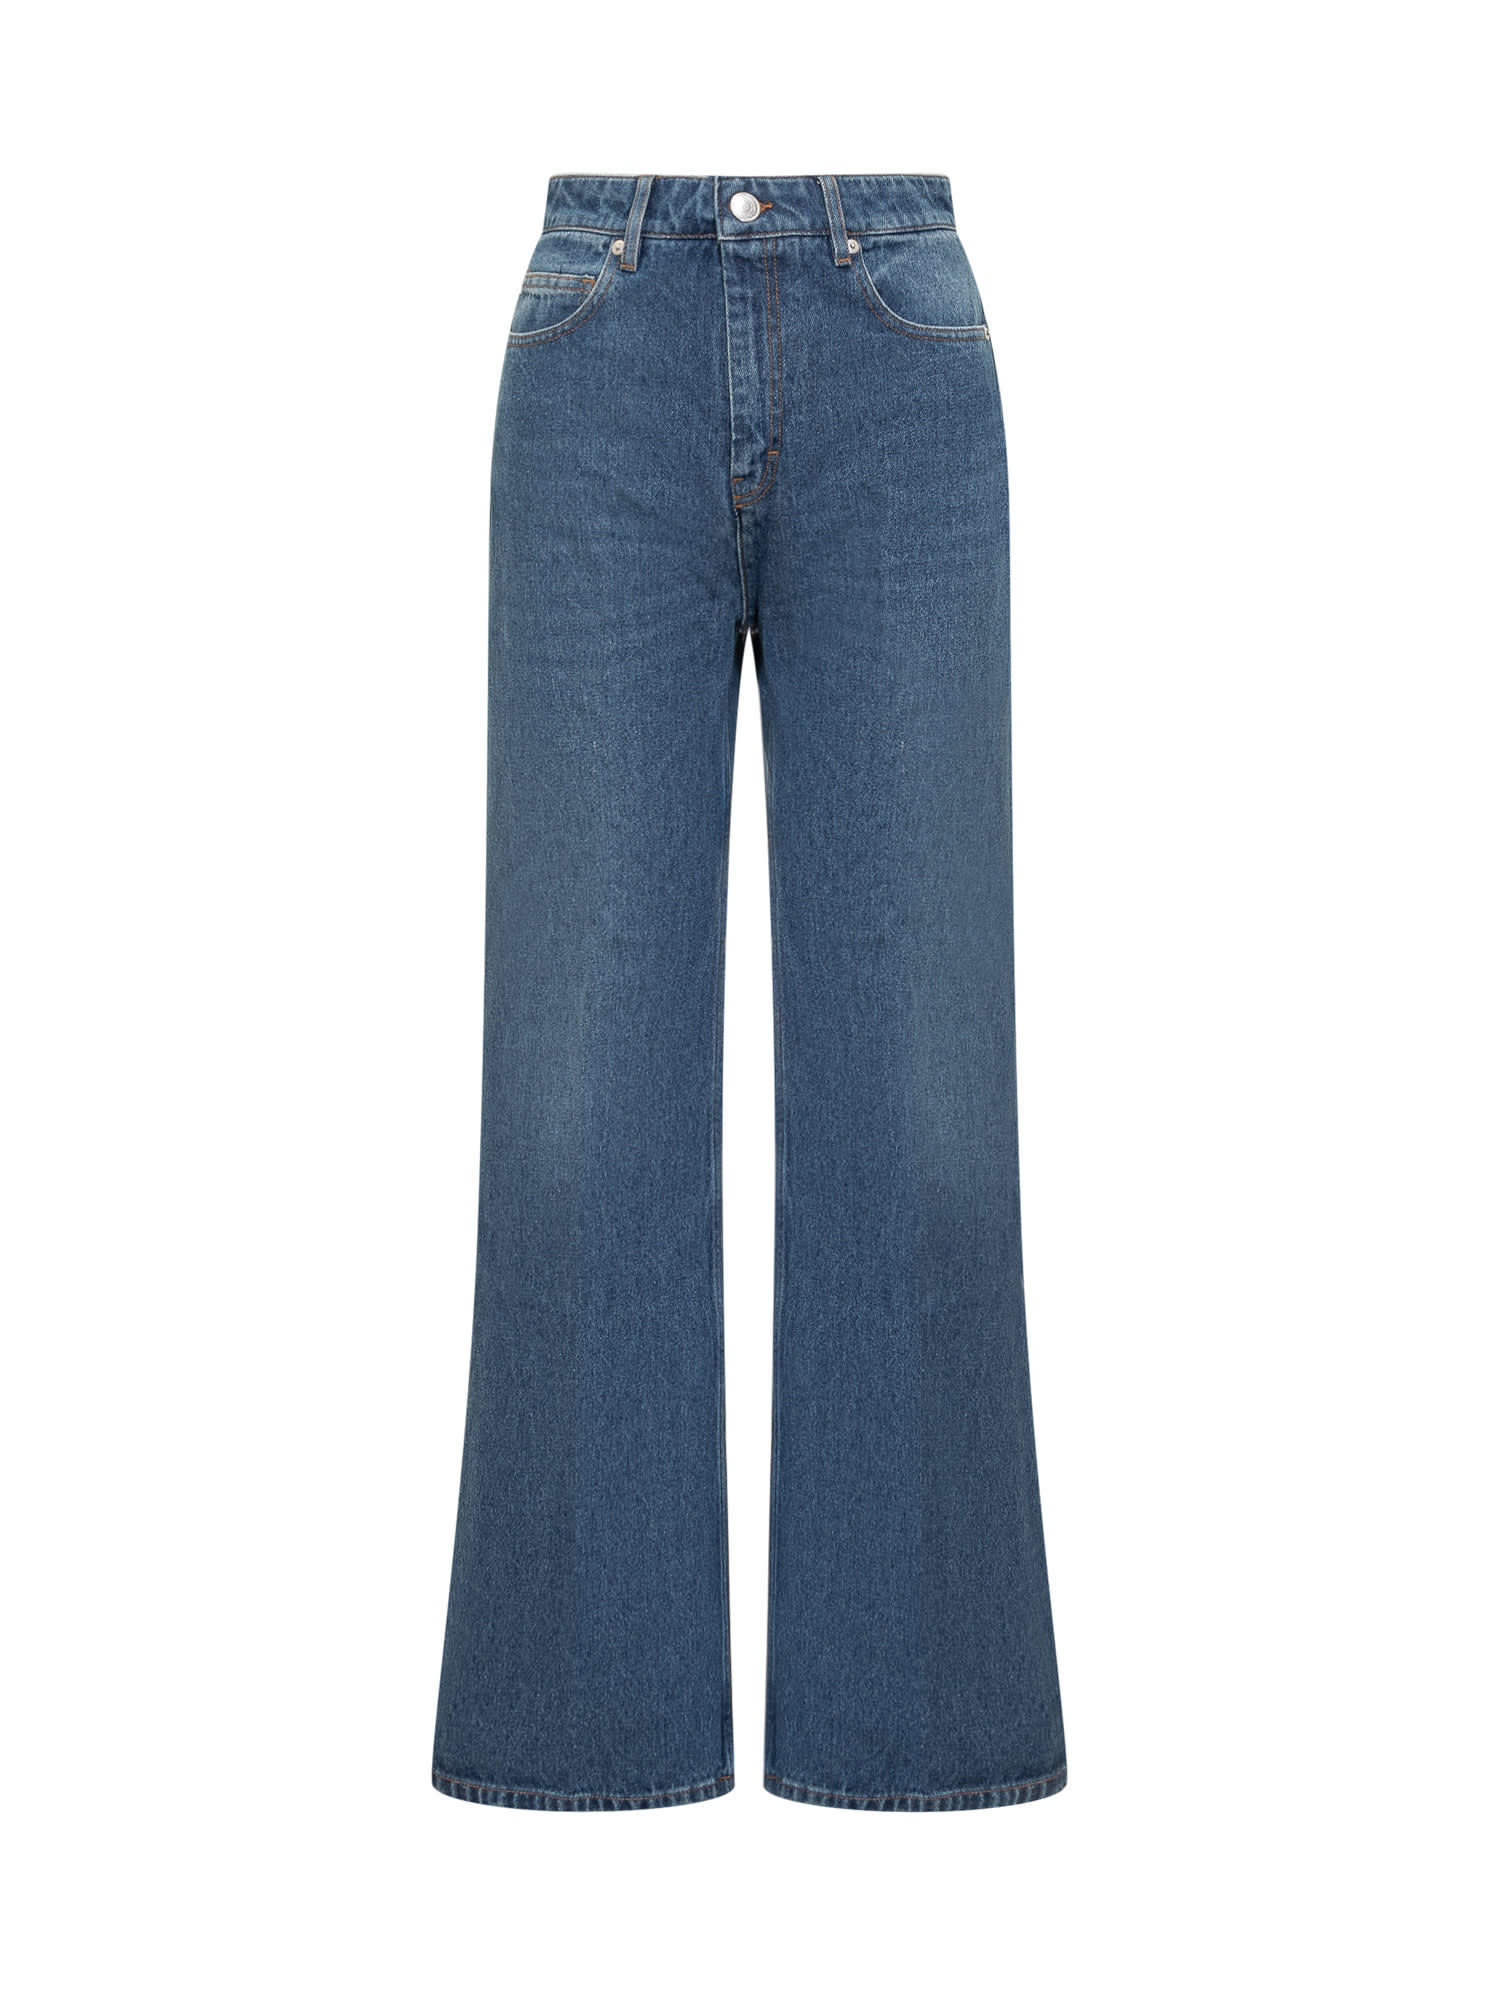 Shop Ami Alexandre Mattiussi Flare Cotton Denim Jeans In Used Blue